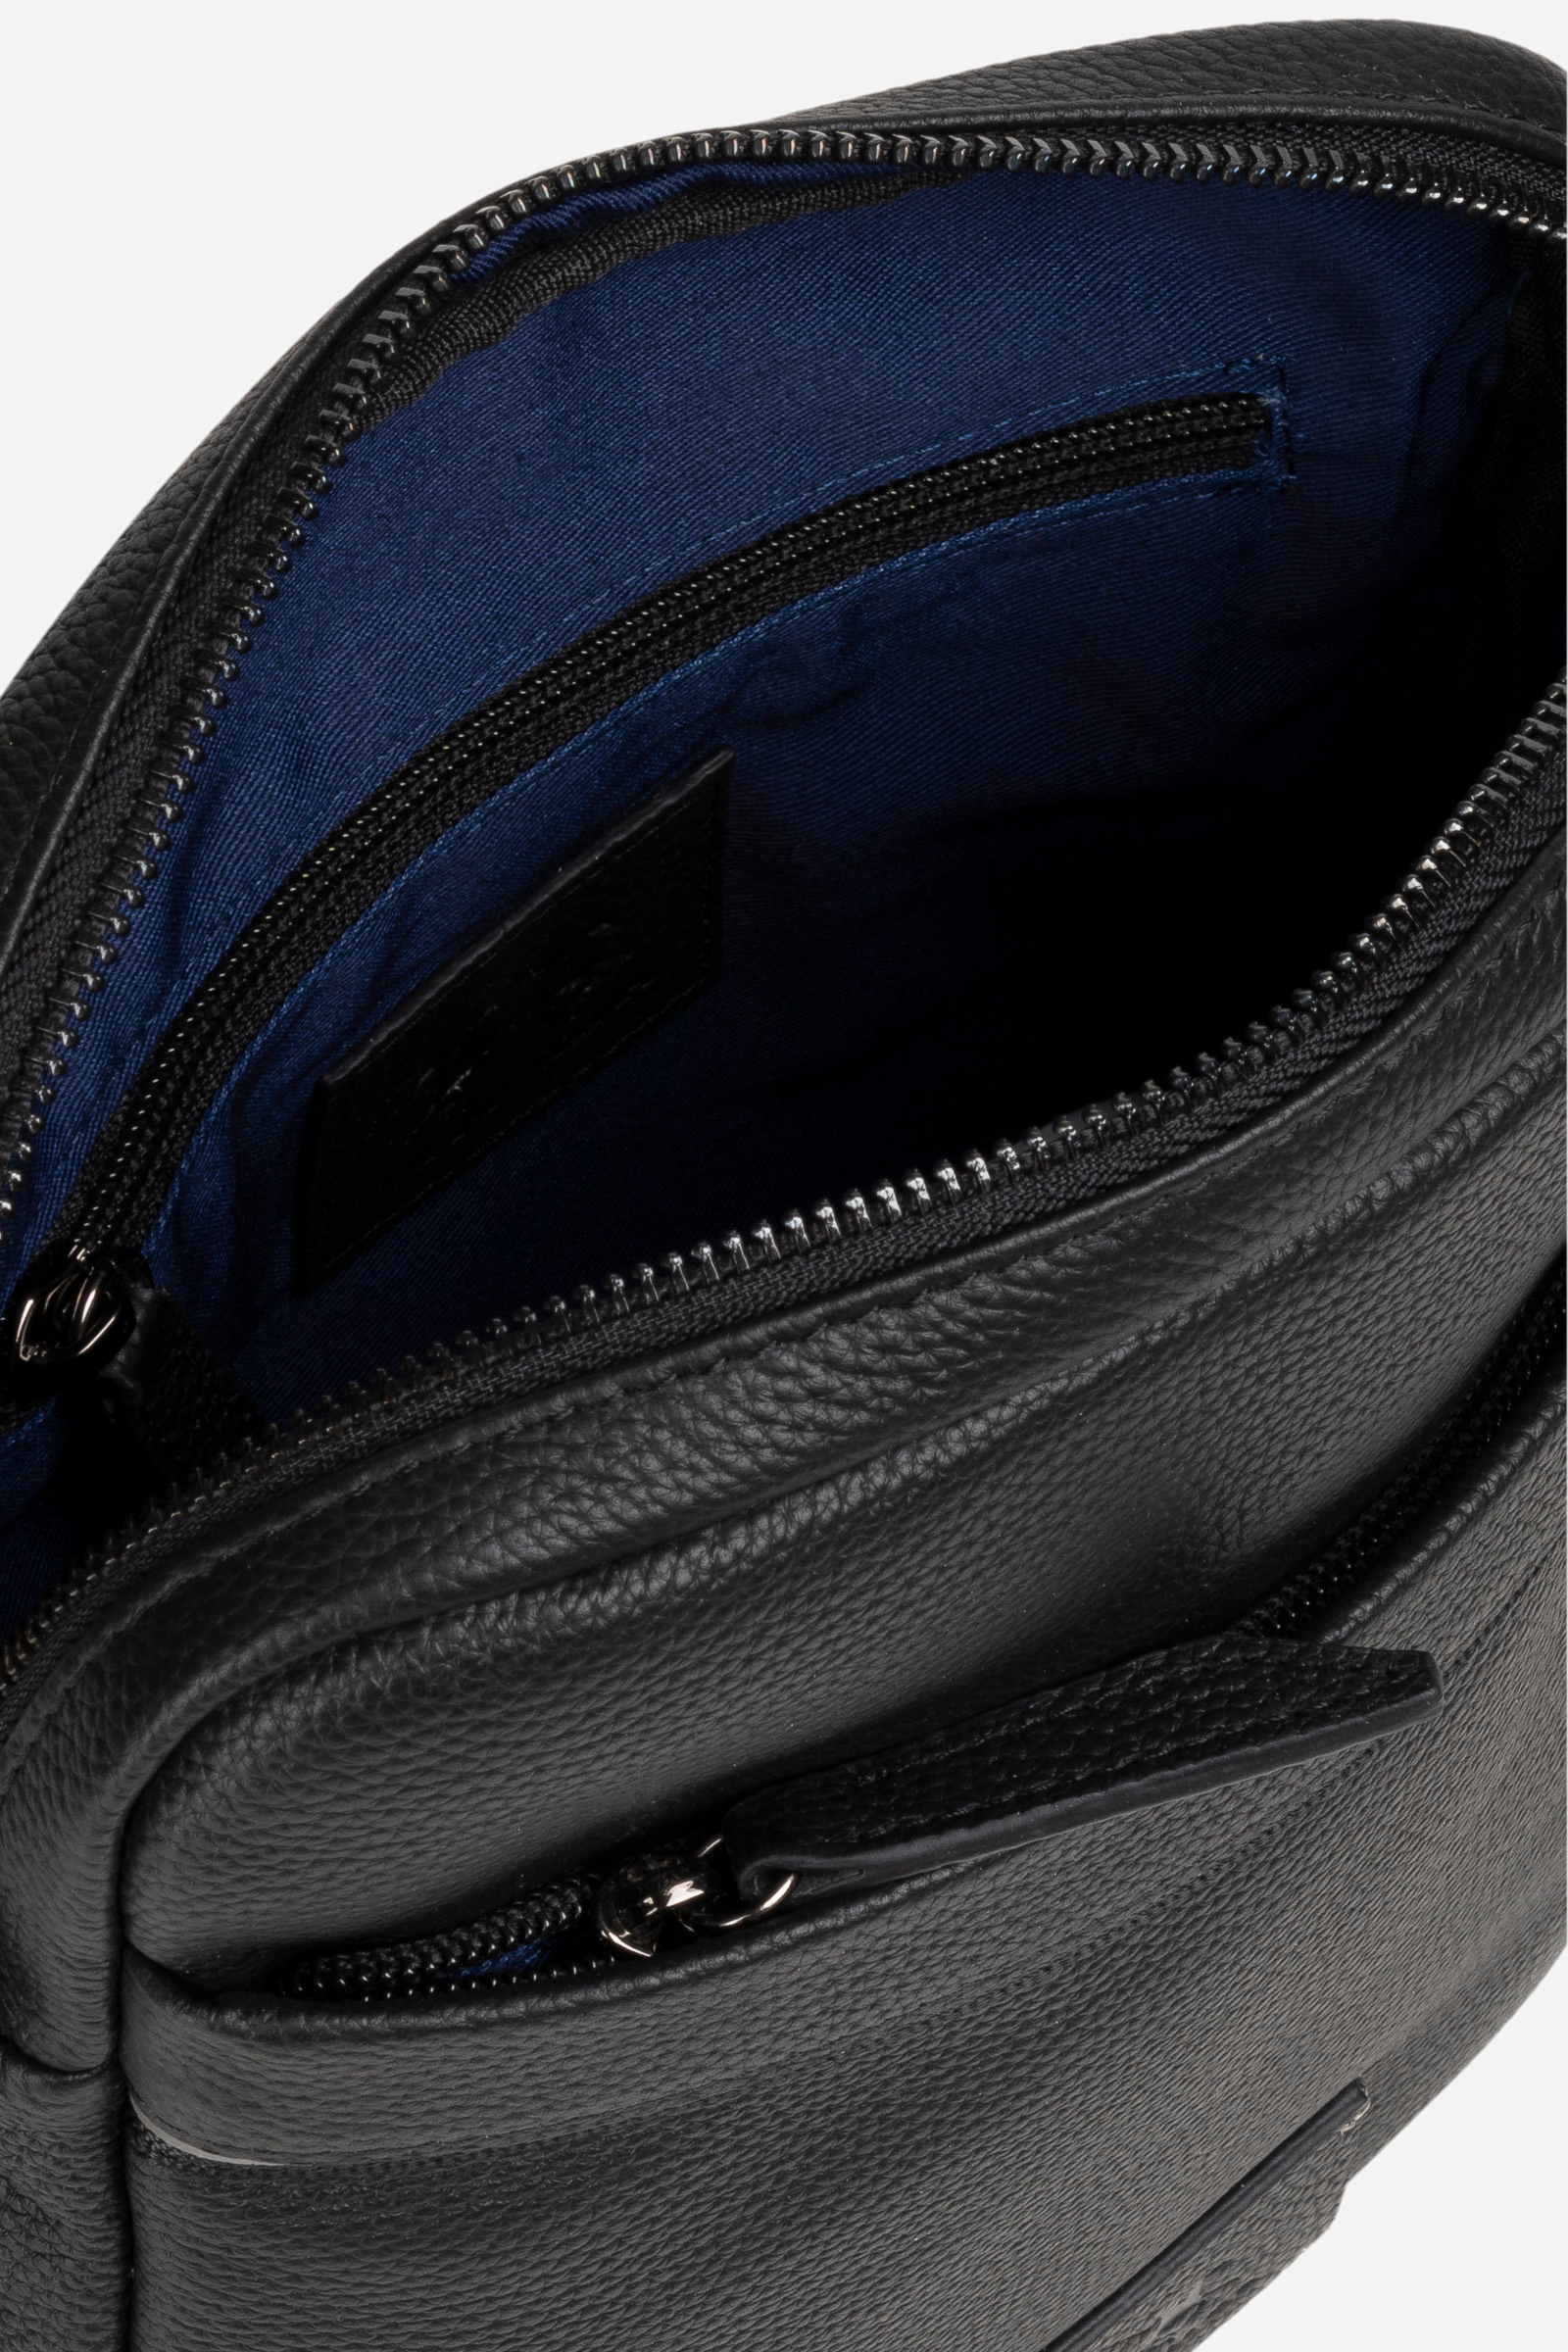 Lacoste Men's Medium Zippered Crossover Bag